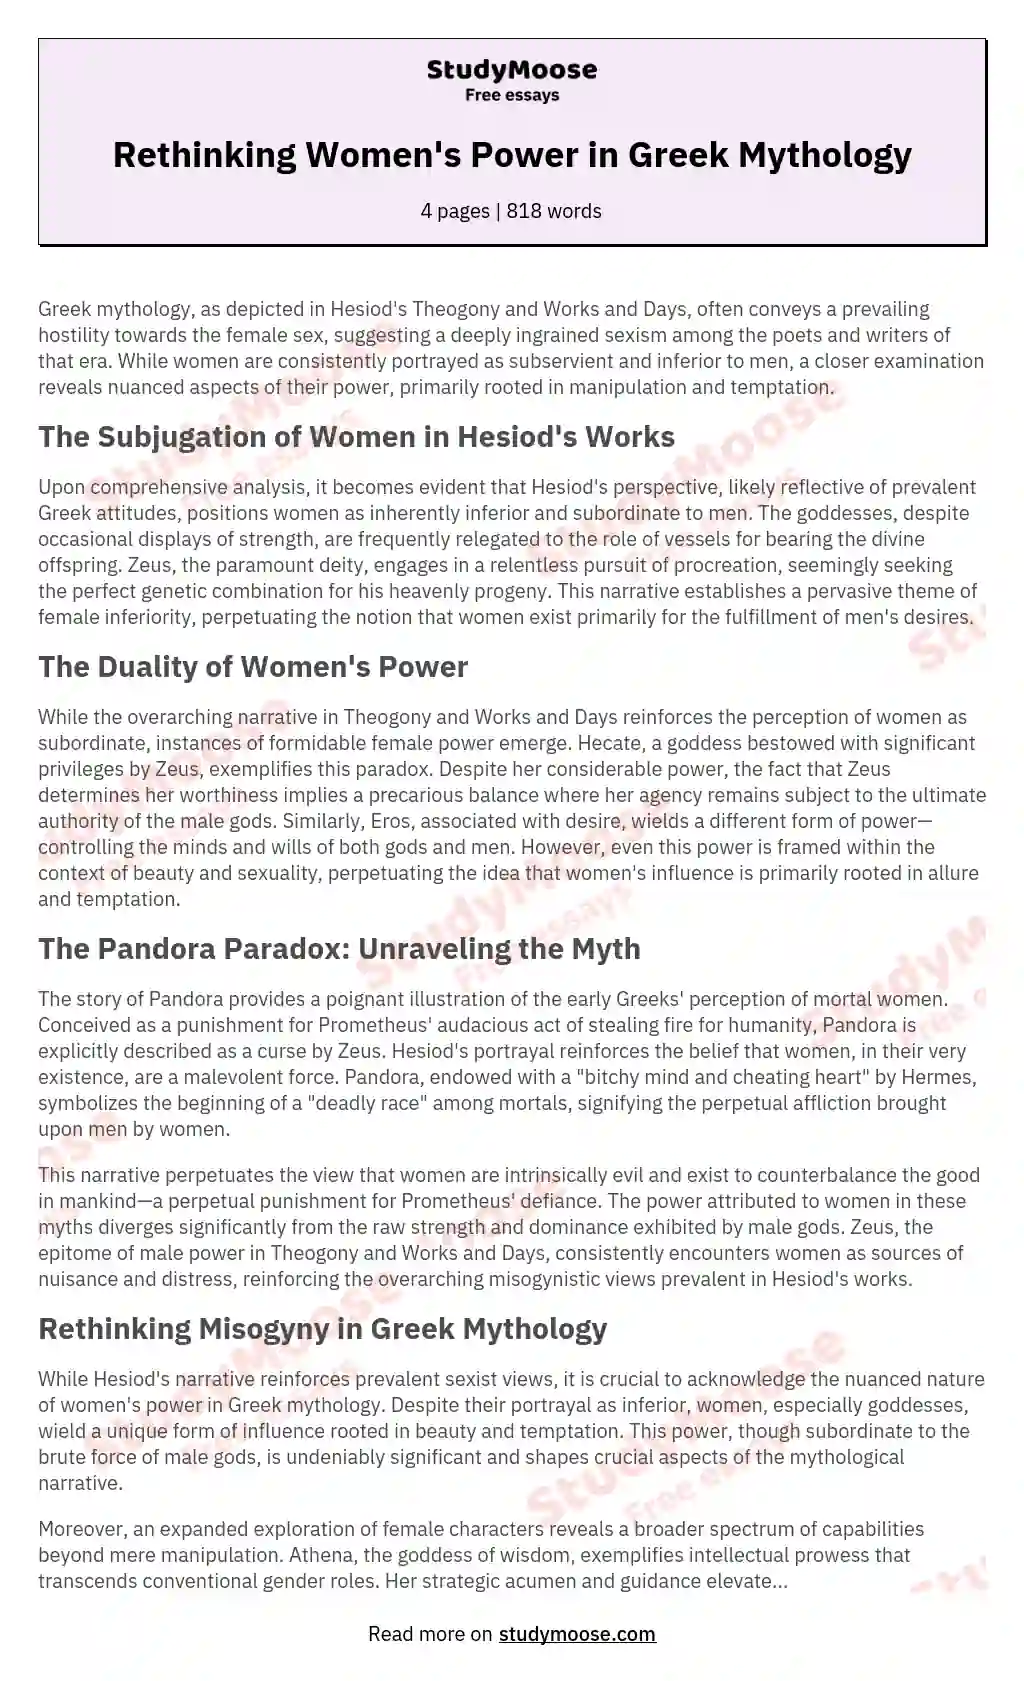 Rethinking Women's Power in Greek Mythology essay